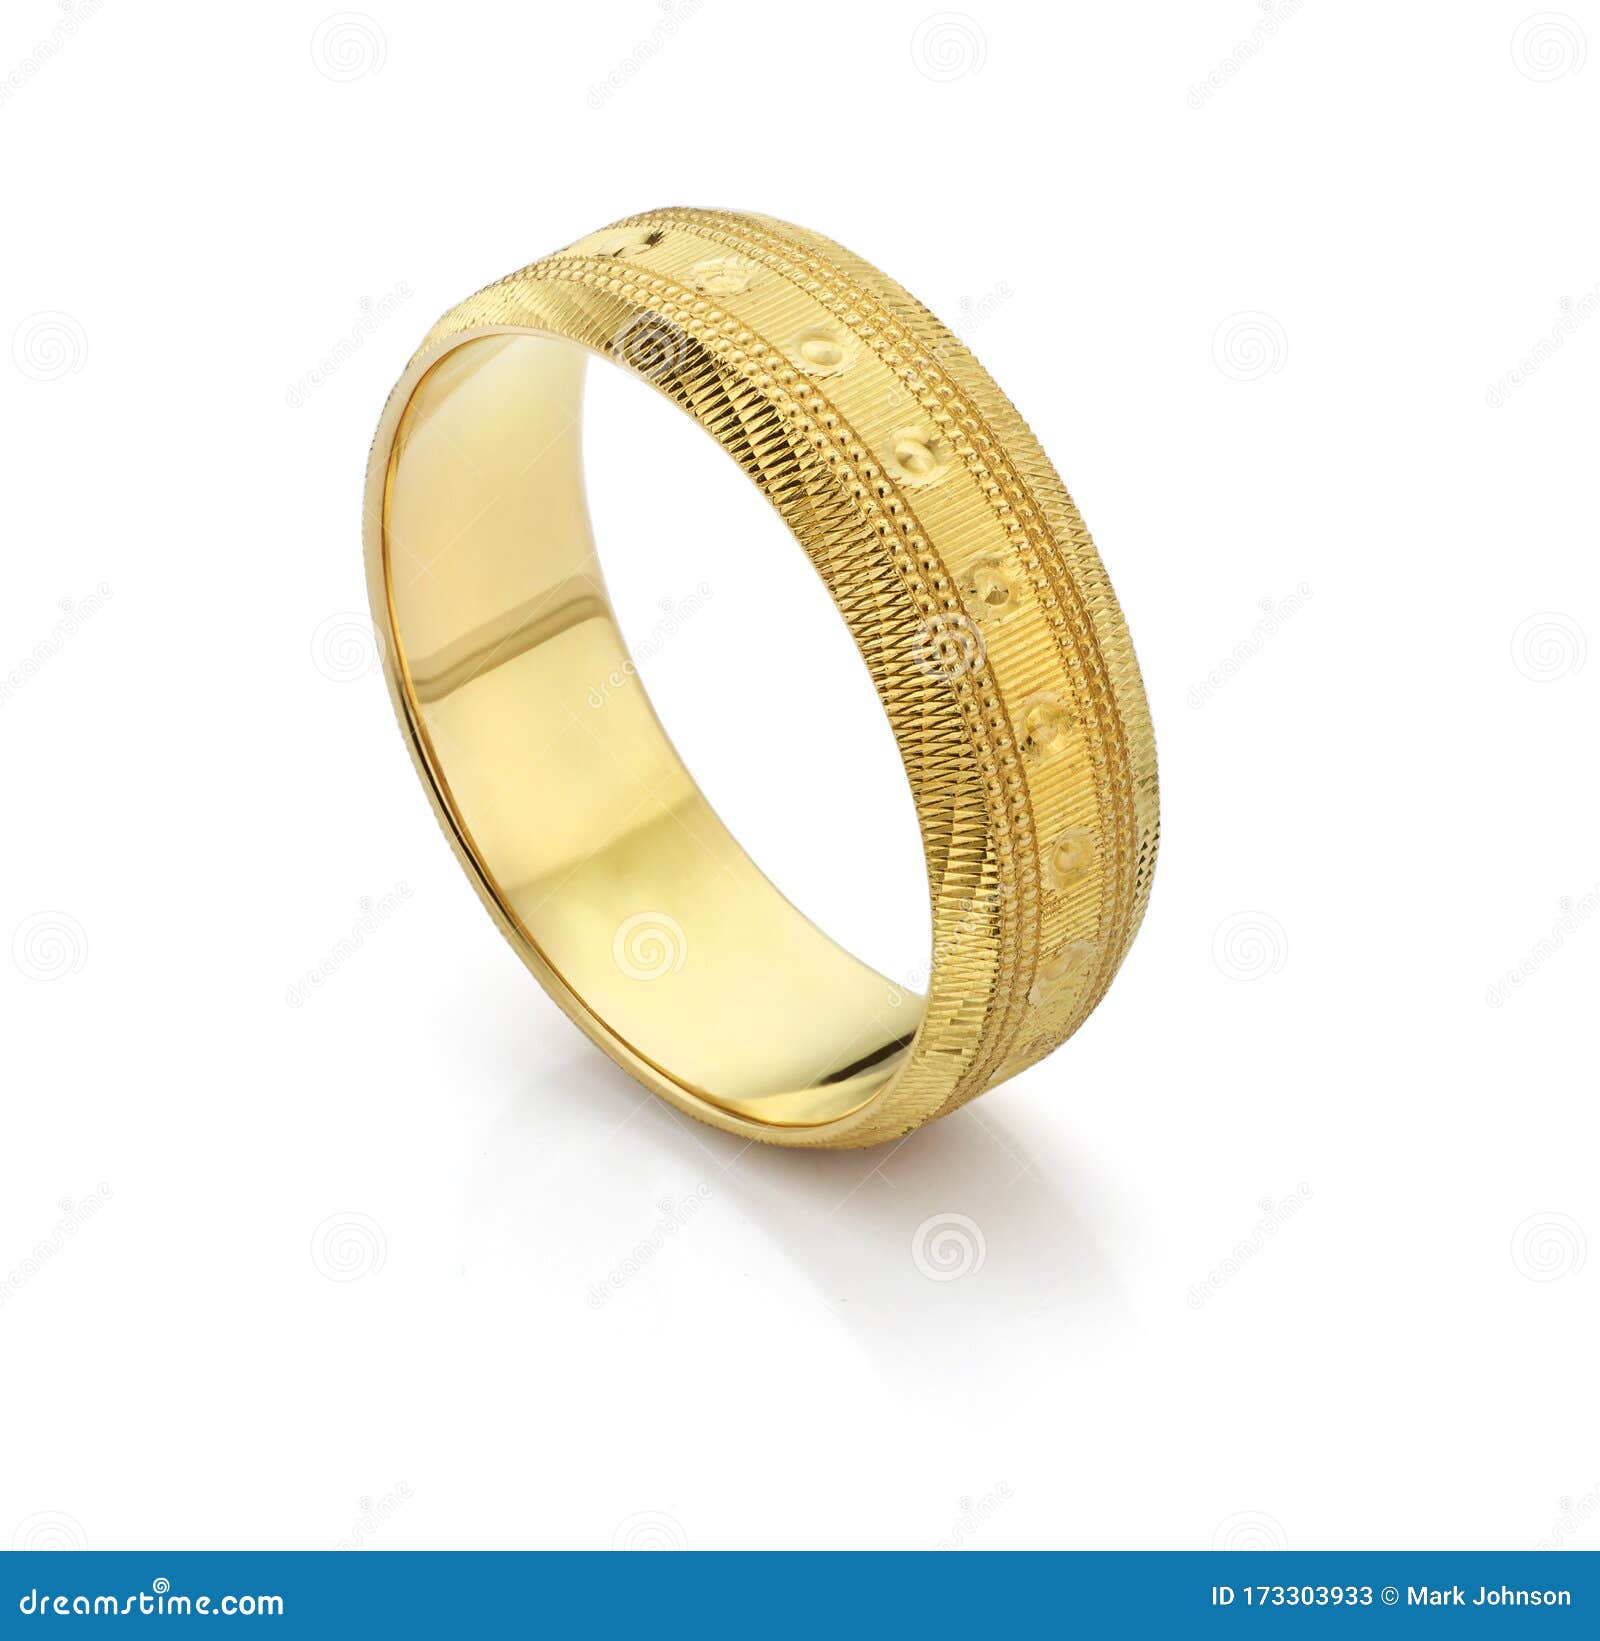 24 carat gold wedding ring